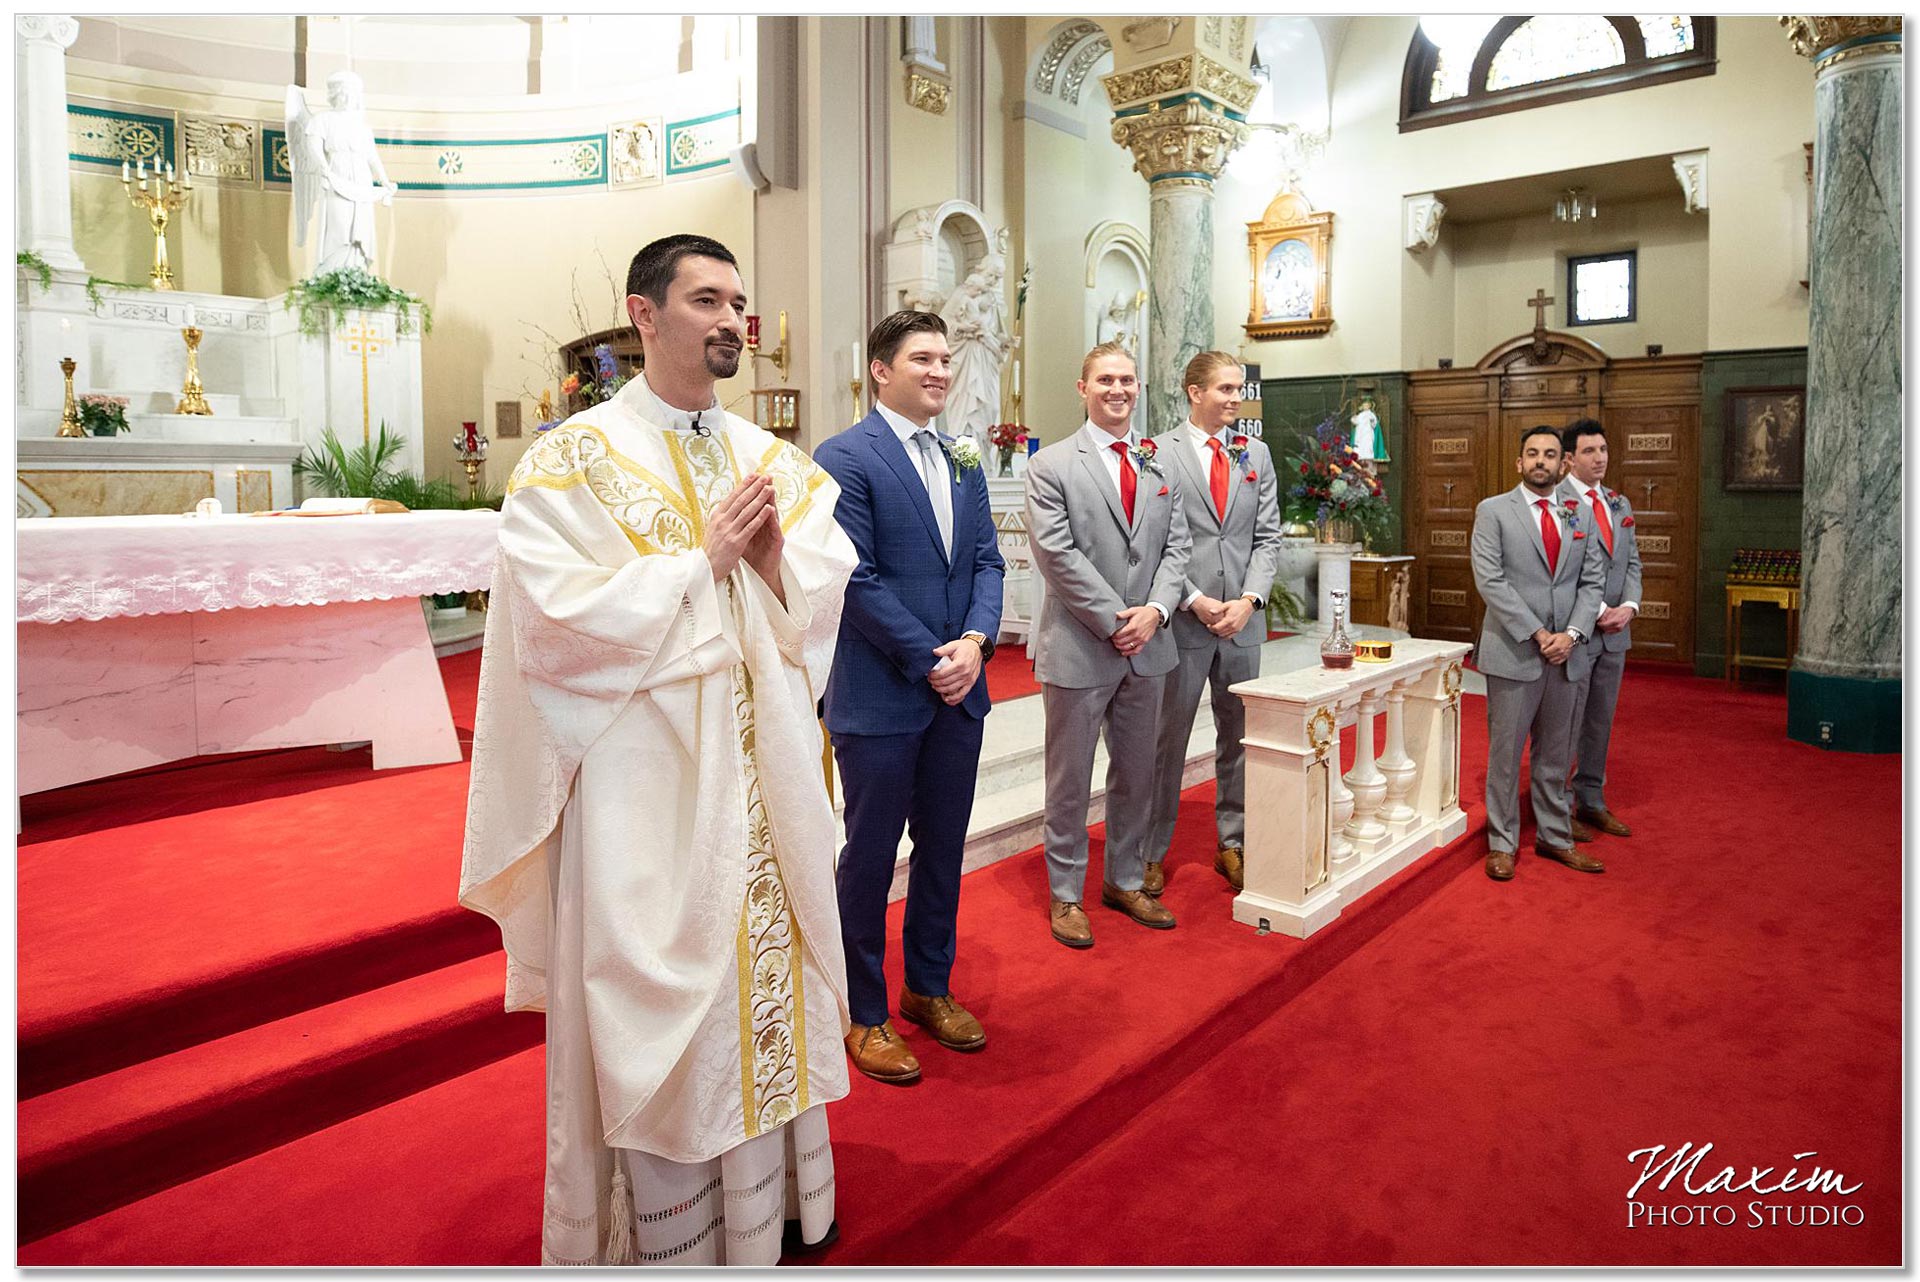 Joseph Catholic Church Dayton Wedding Ceremony